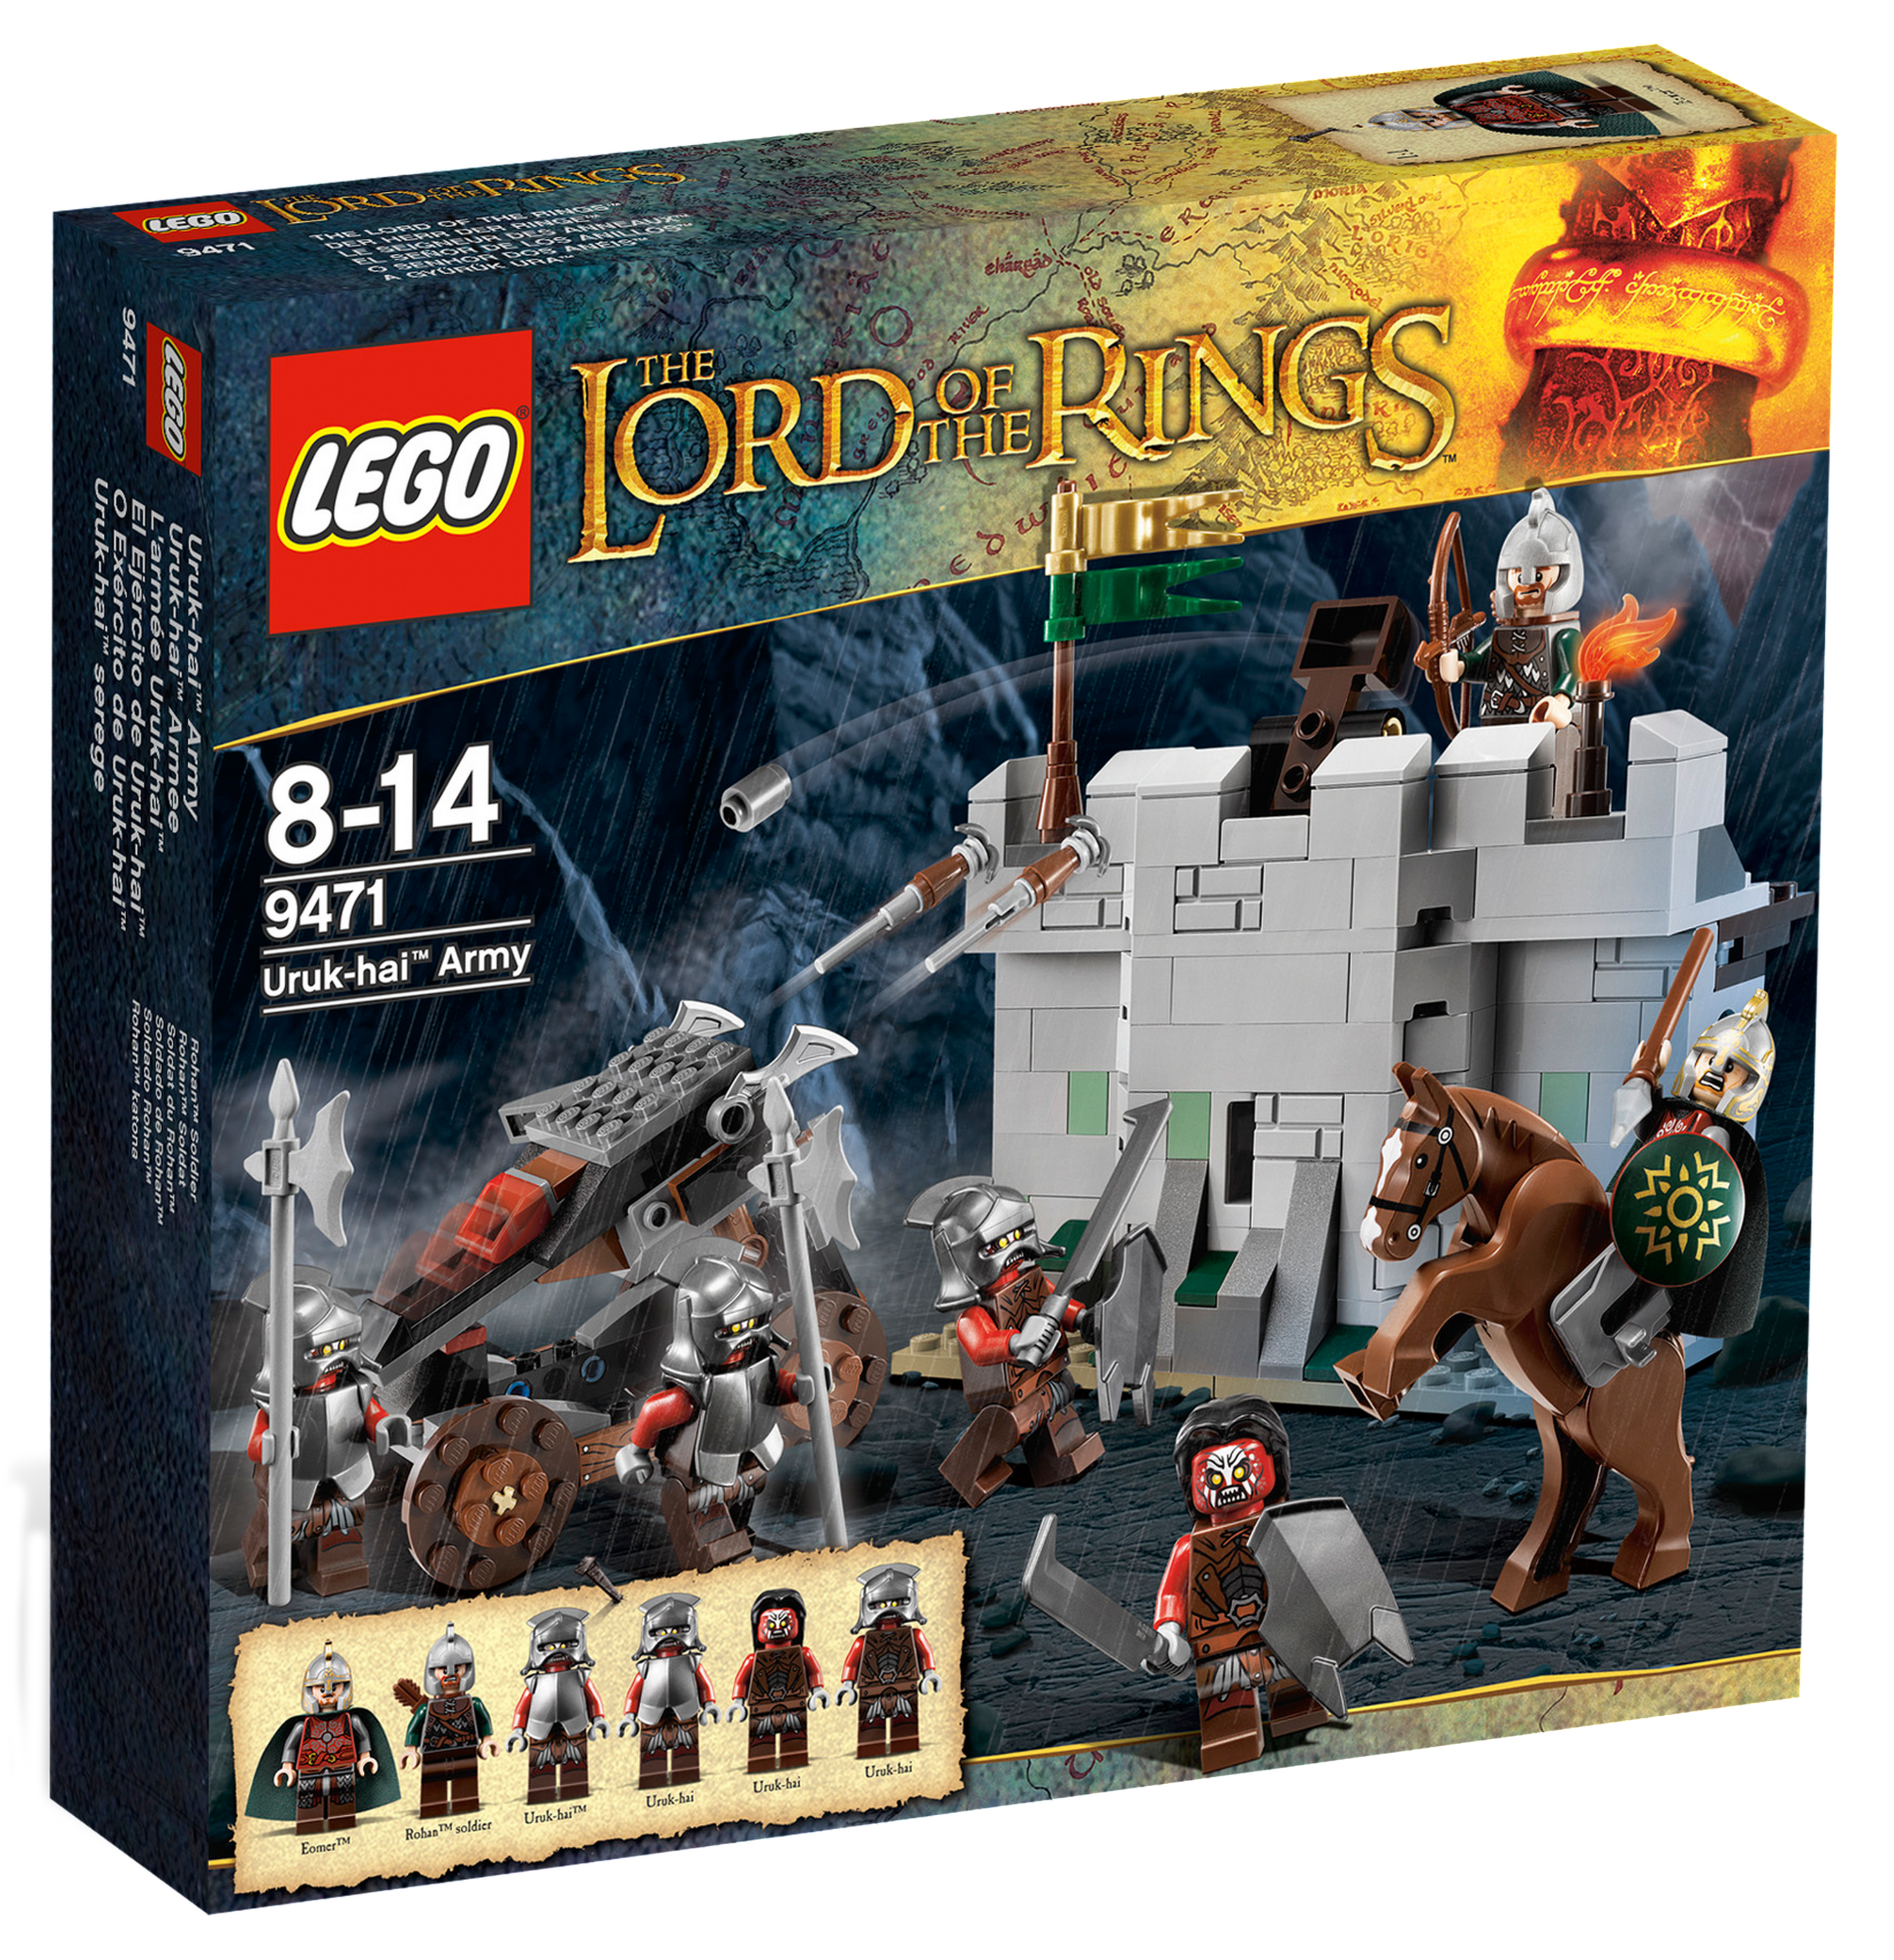 LEGO Le Seigneur des Anneaux 9476 pas cher, La forge des Orques